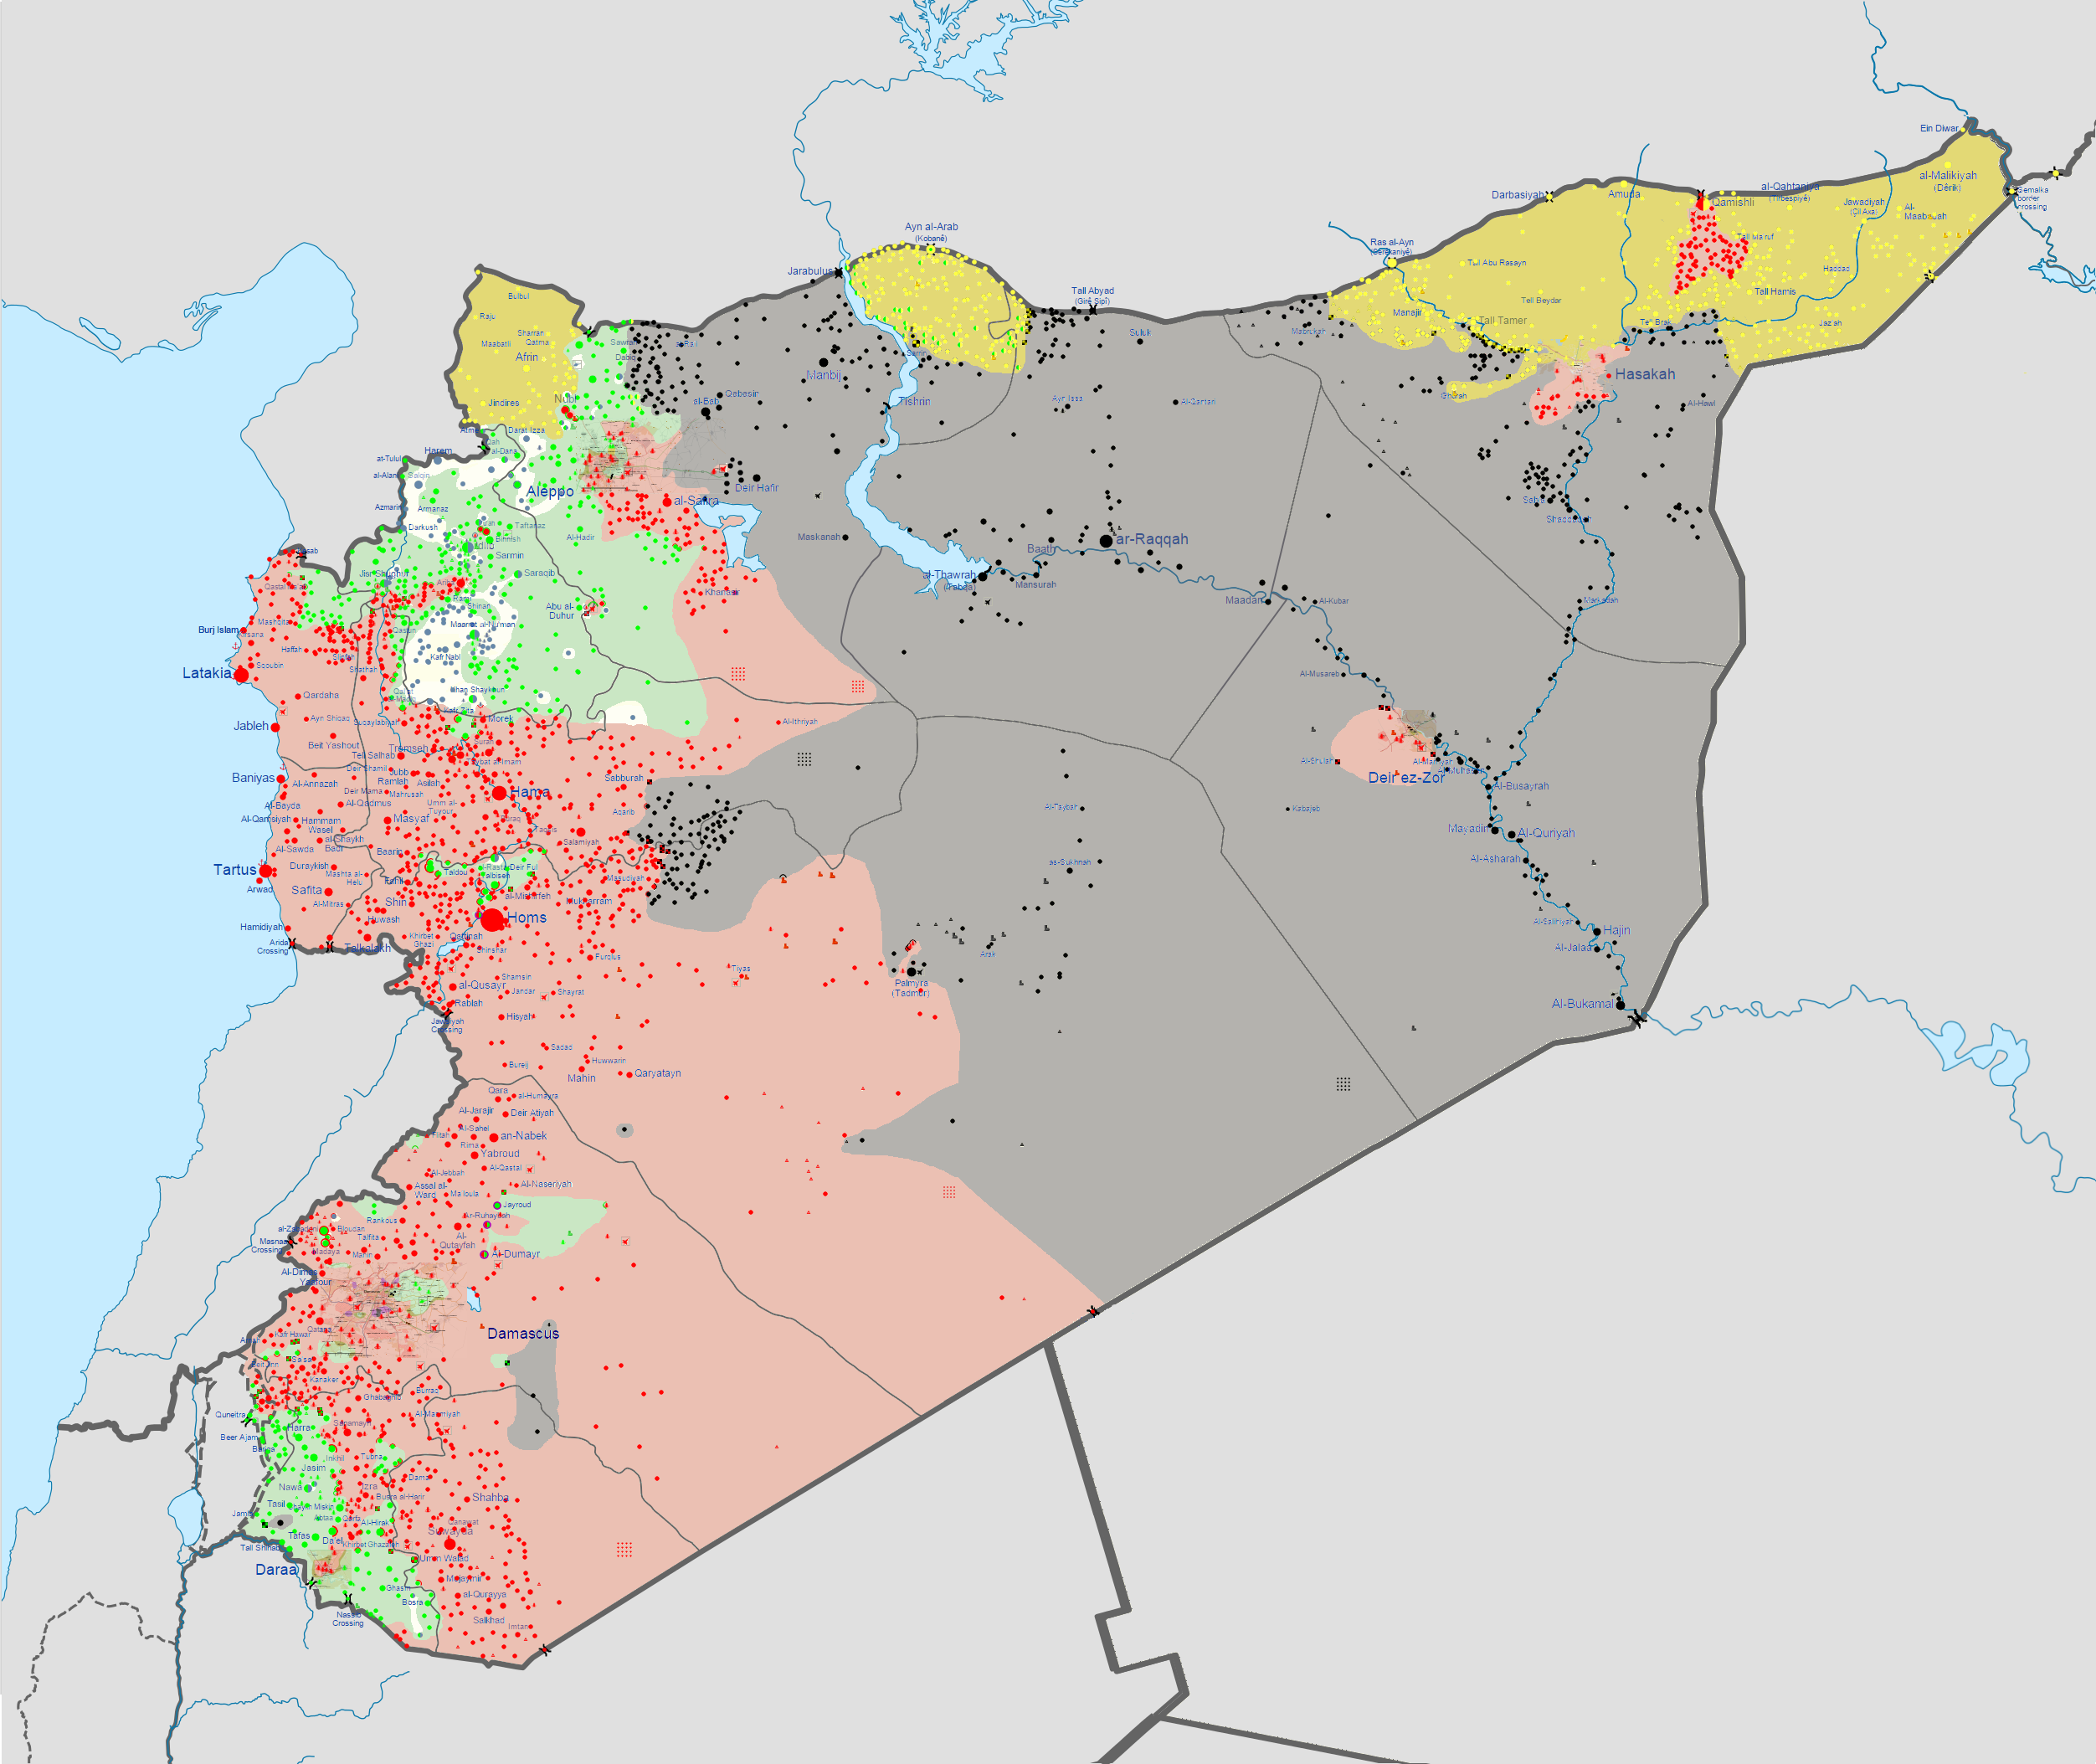 La carte de la situation en Syrie après la chute de Palmyre. En noir: territoire sous contrôle du groupe Etat islamique, en rouge contrôle du régime, en vert les rebelles, en jaune les Kurdes. [Wikimedia Commons]